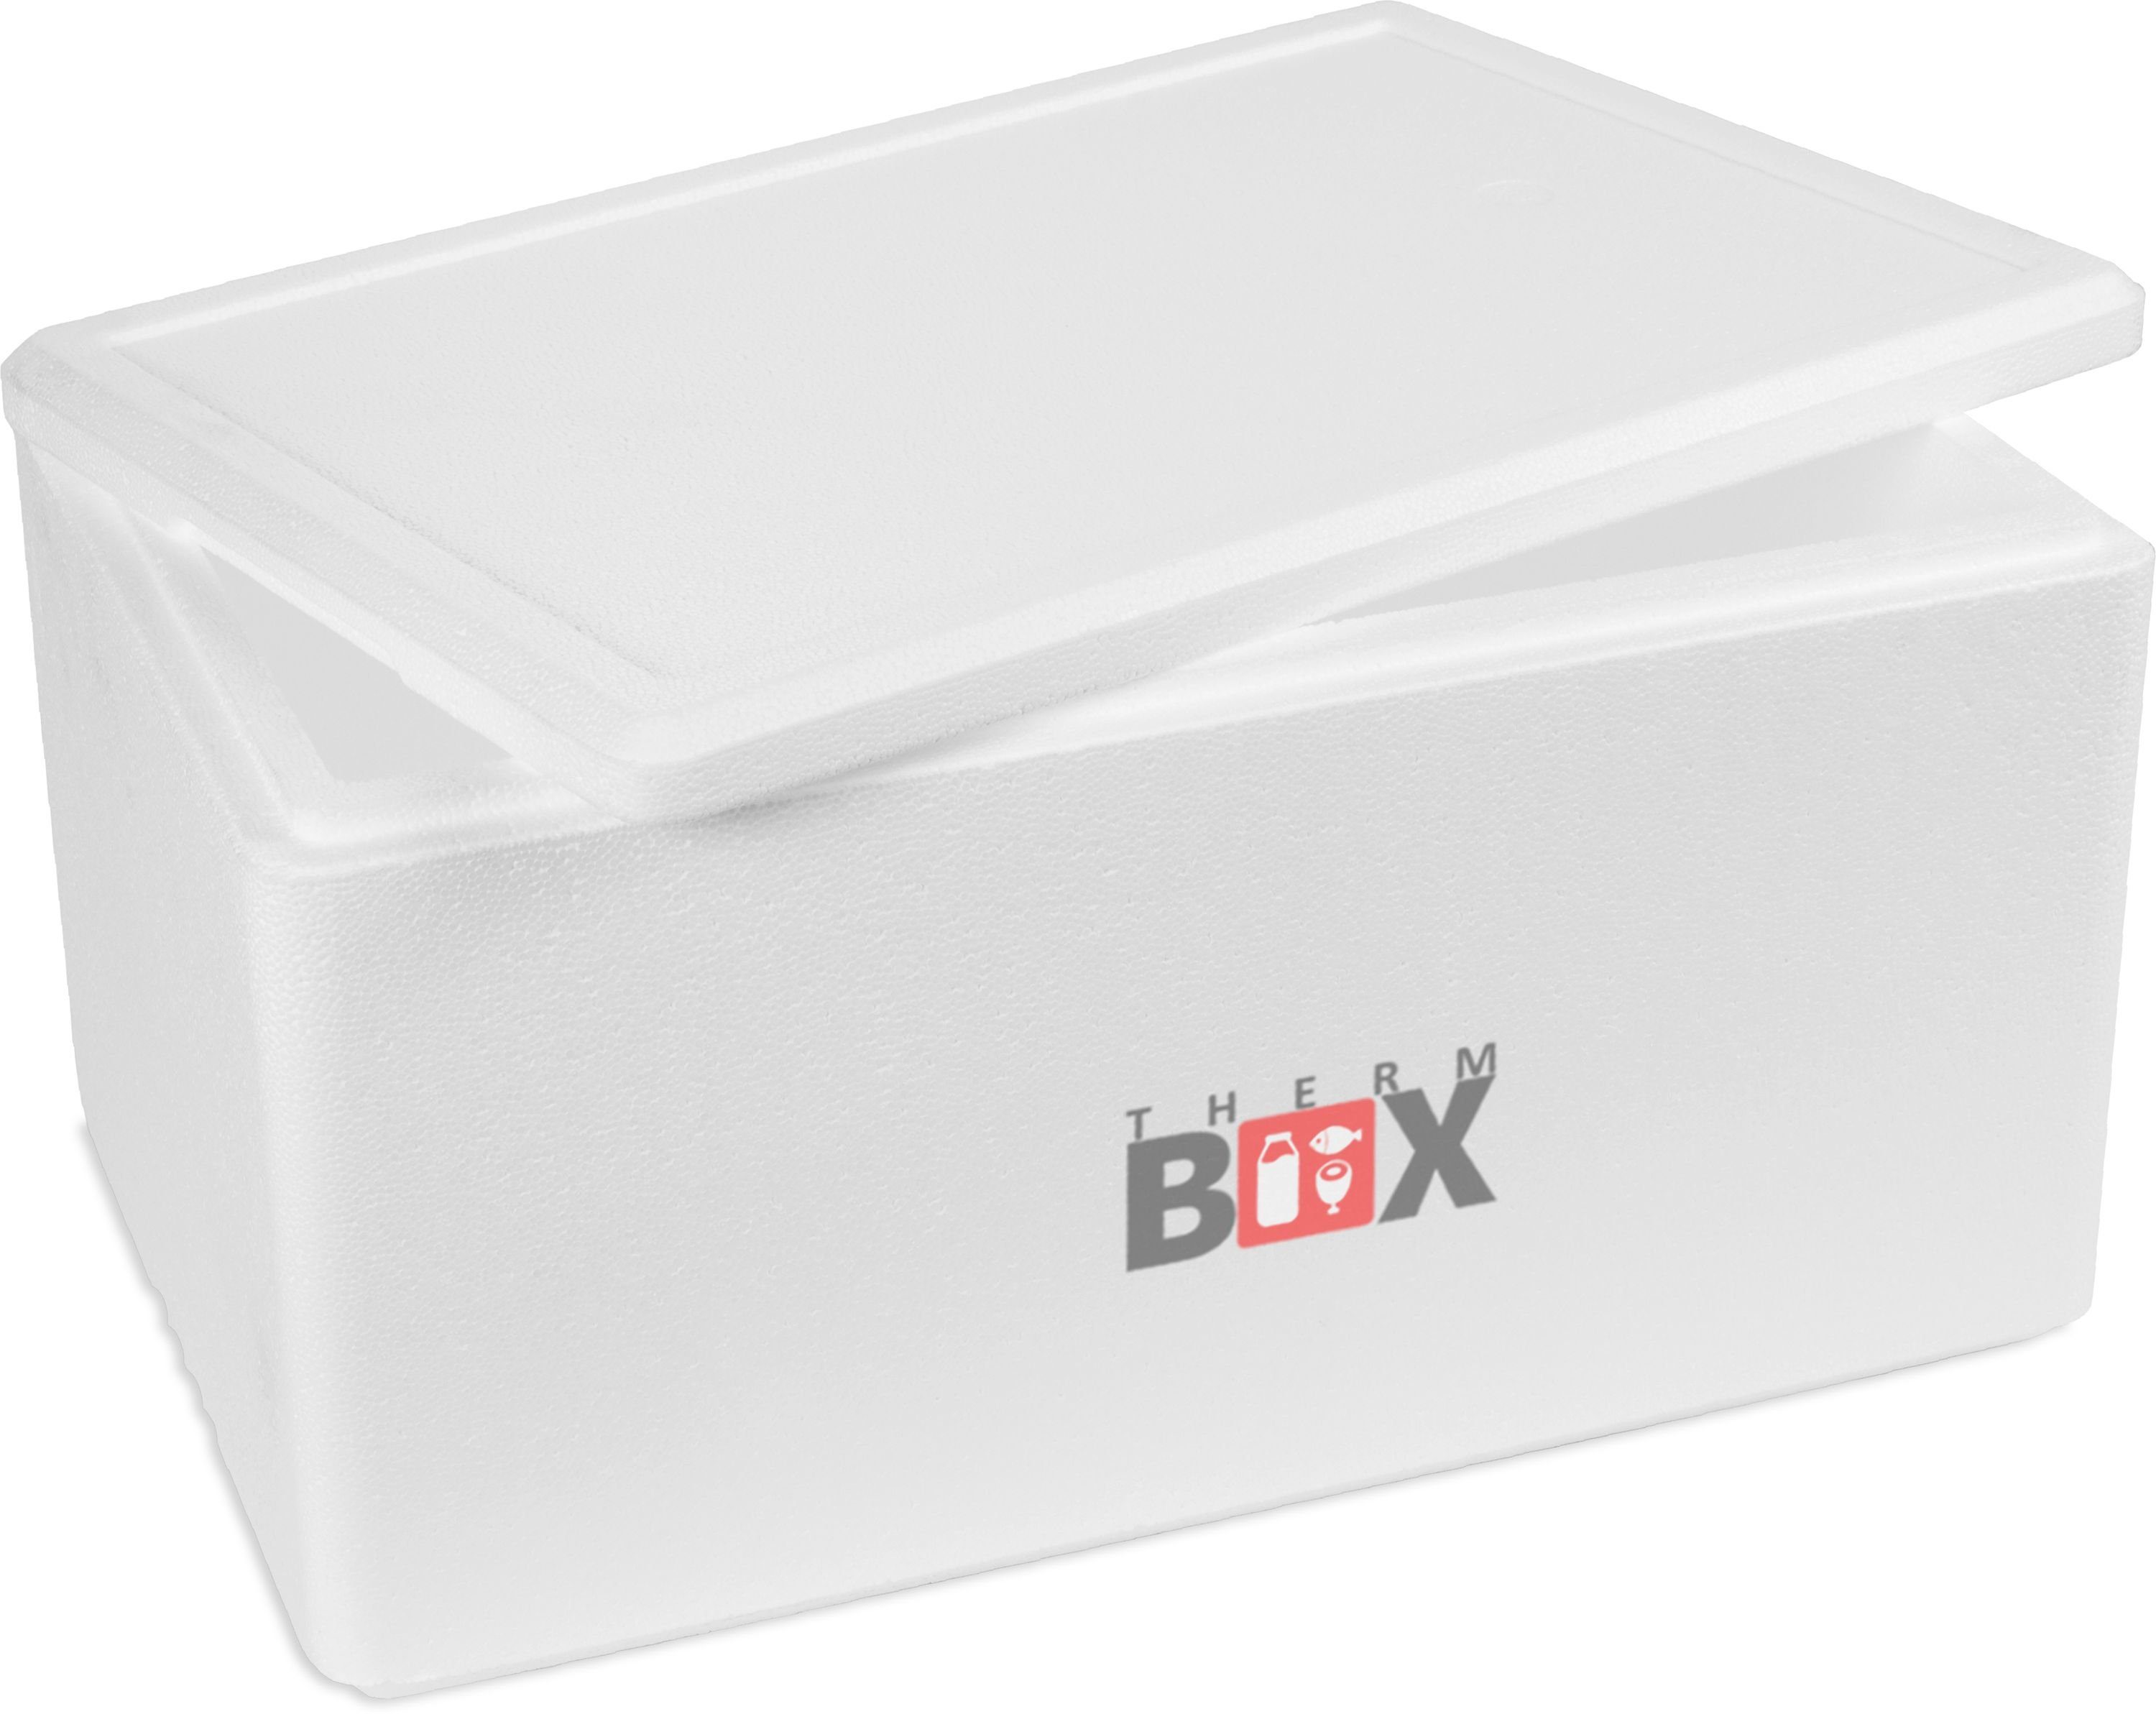 THERM-BOX Thermobehälter Styroporbox 45W Innen: 53x33x25cm Wand: 3cm 45,3L, Styropor-Verdichtet, (1, 0-tlg., Box mit Deckel im Karton), InIsolierbox Thermobox Kühlbox Warmhaltebox Wiederverwendbar